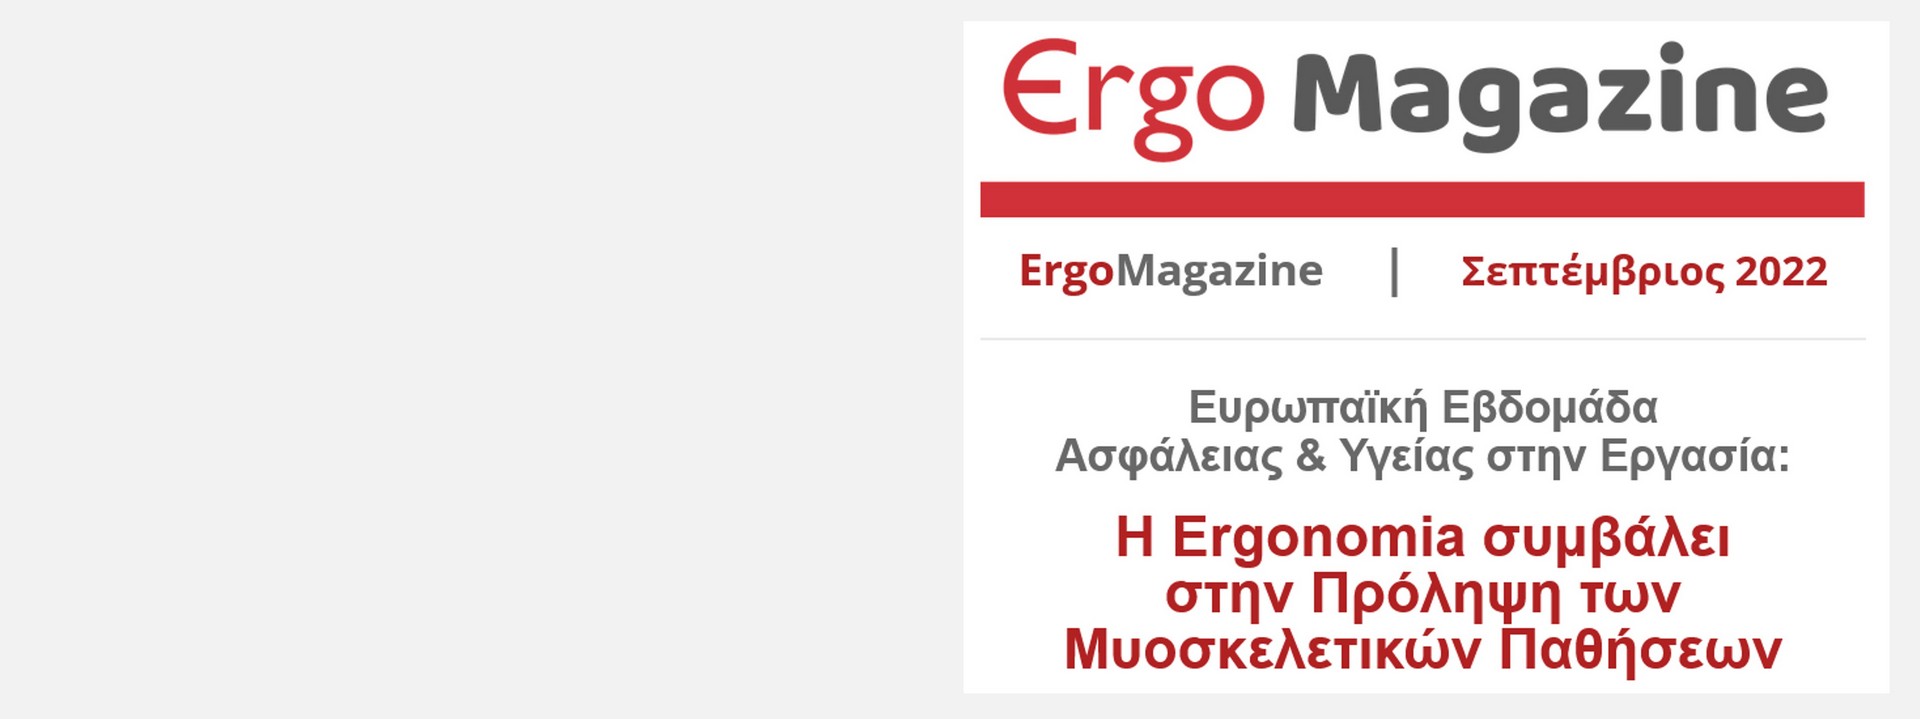 ErgoMagazine September 2022